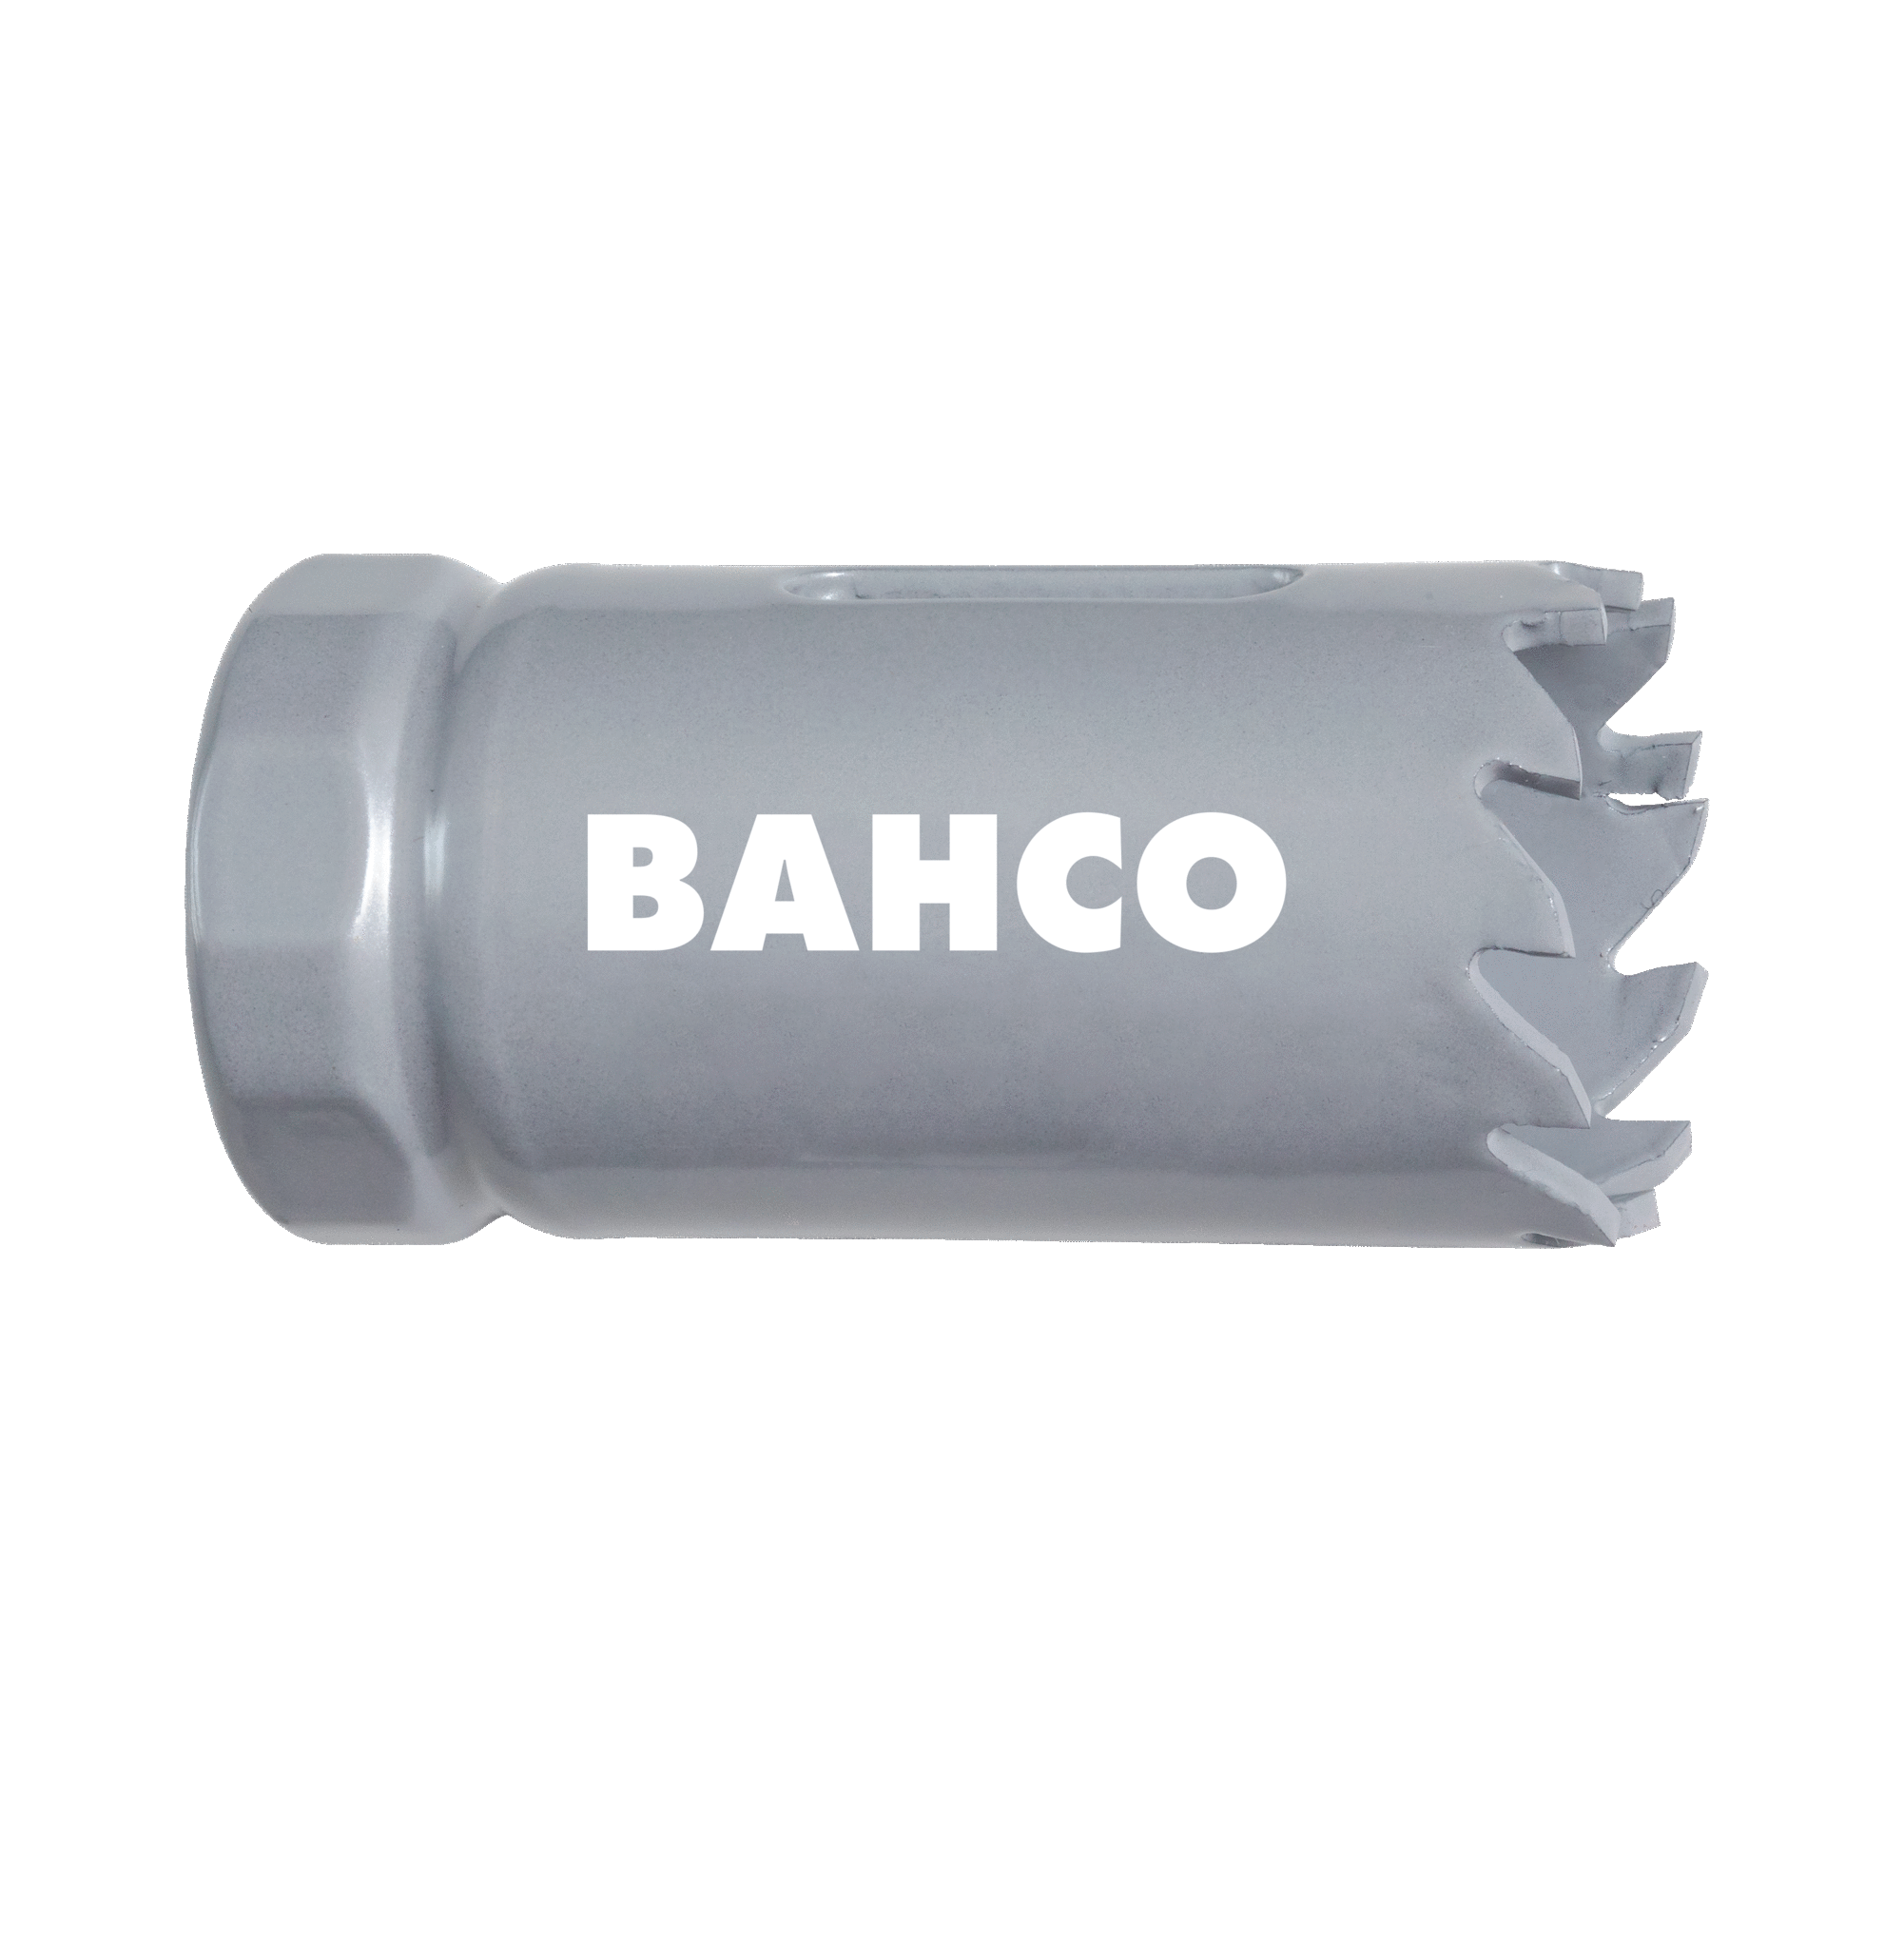 Кольцевые пилы с твердосплавными напайками BAHCO 3832-127